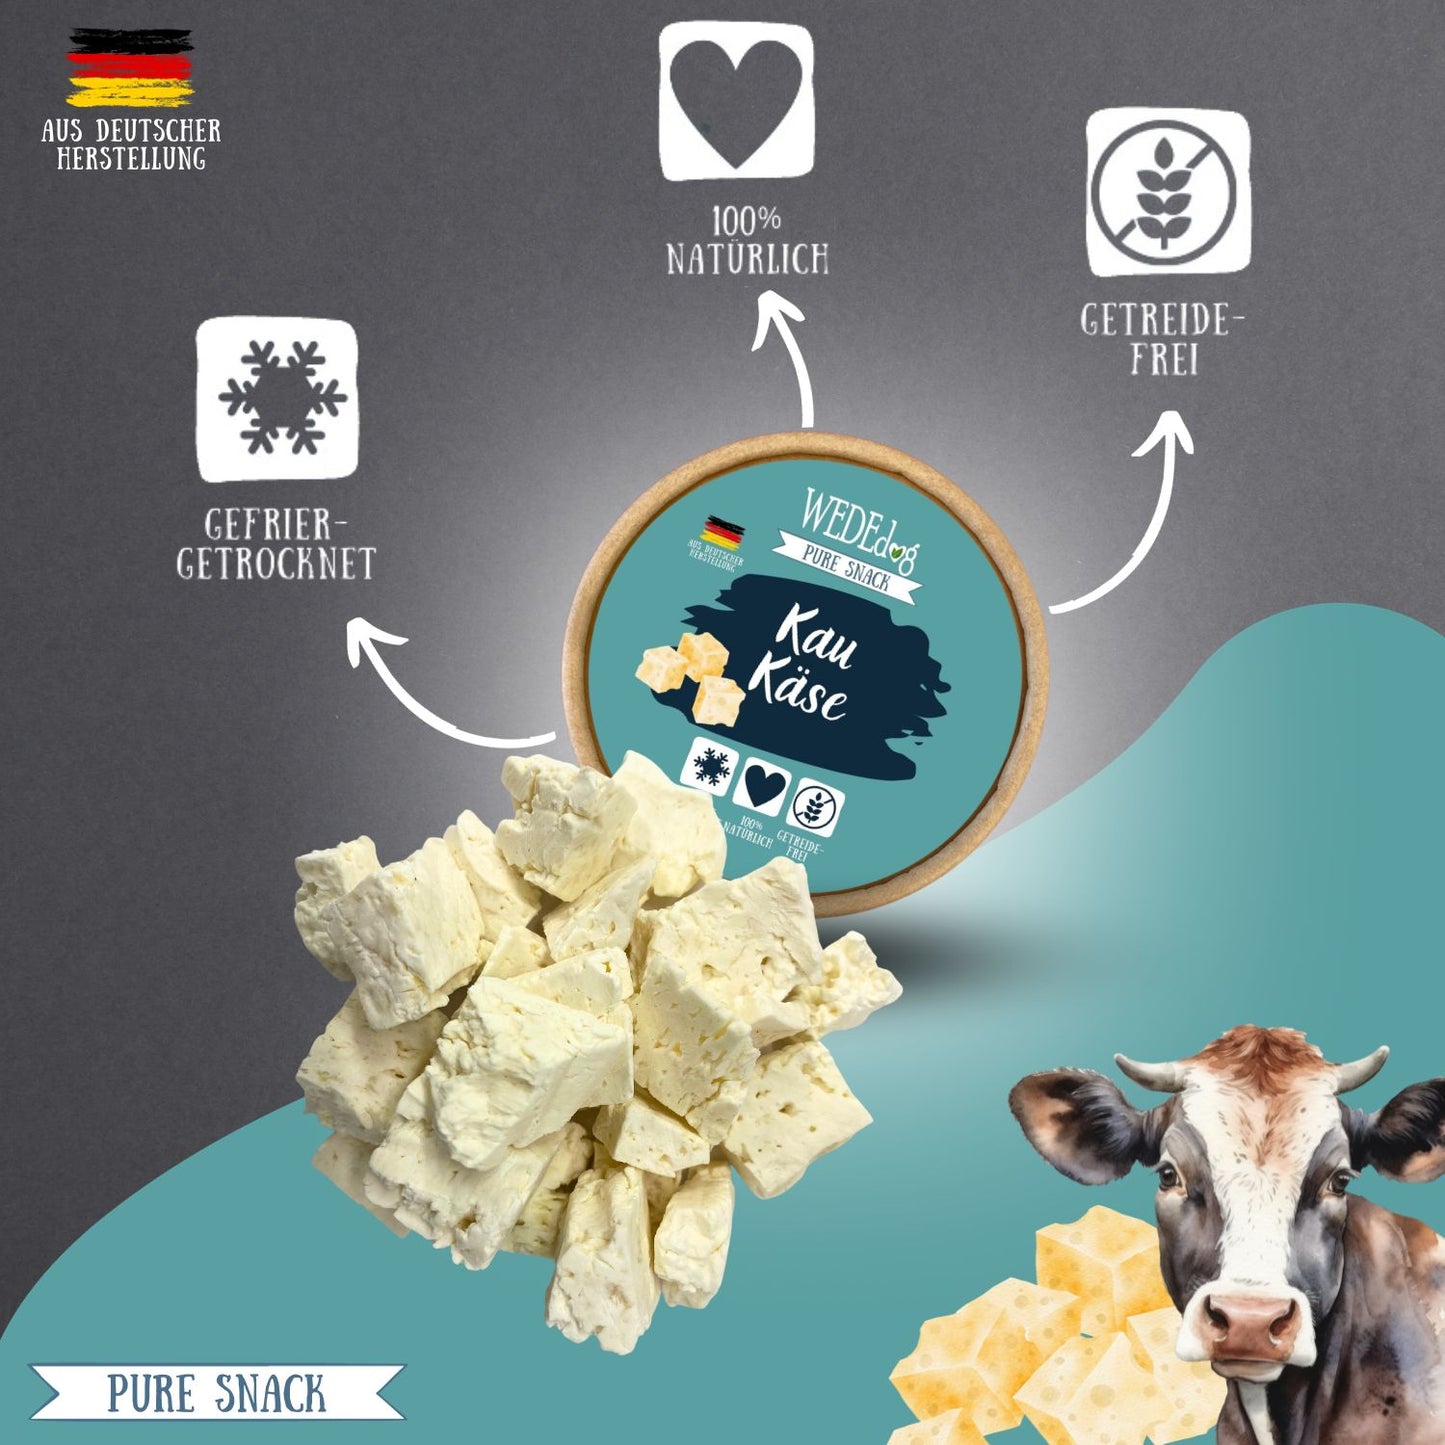 WEDEdog Pure Snack: Gefriergetrockneter Kau Käse - Premium Delikatesse & Natursnack